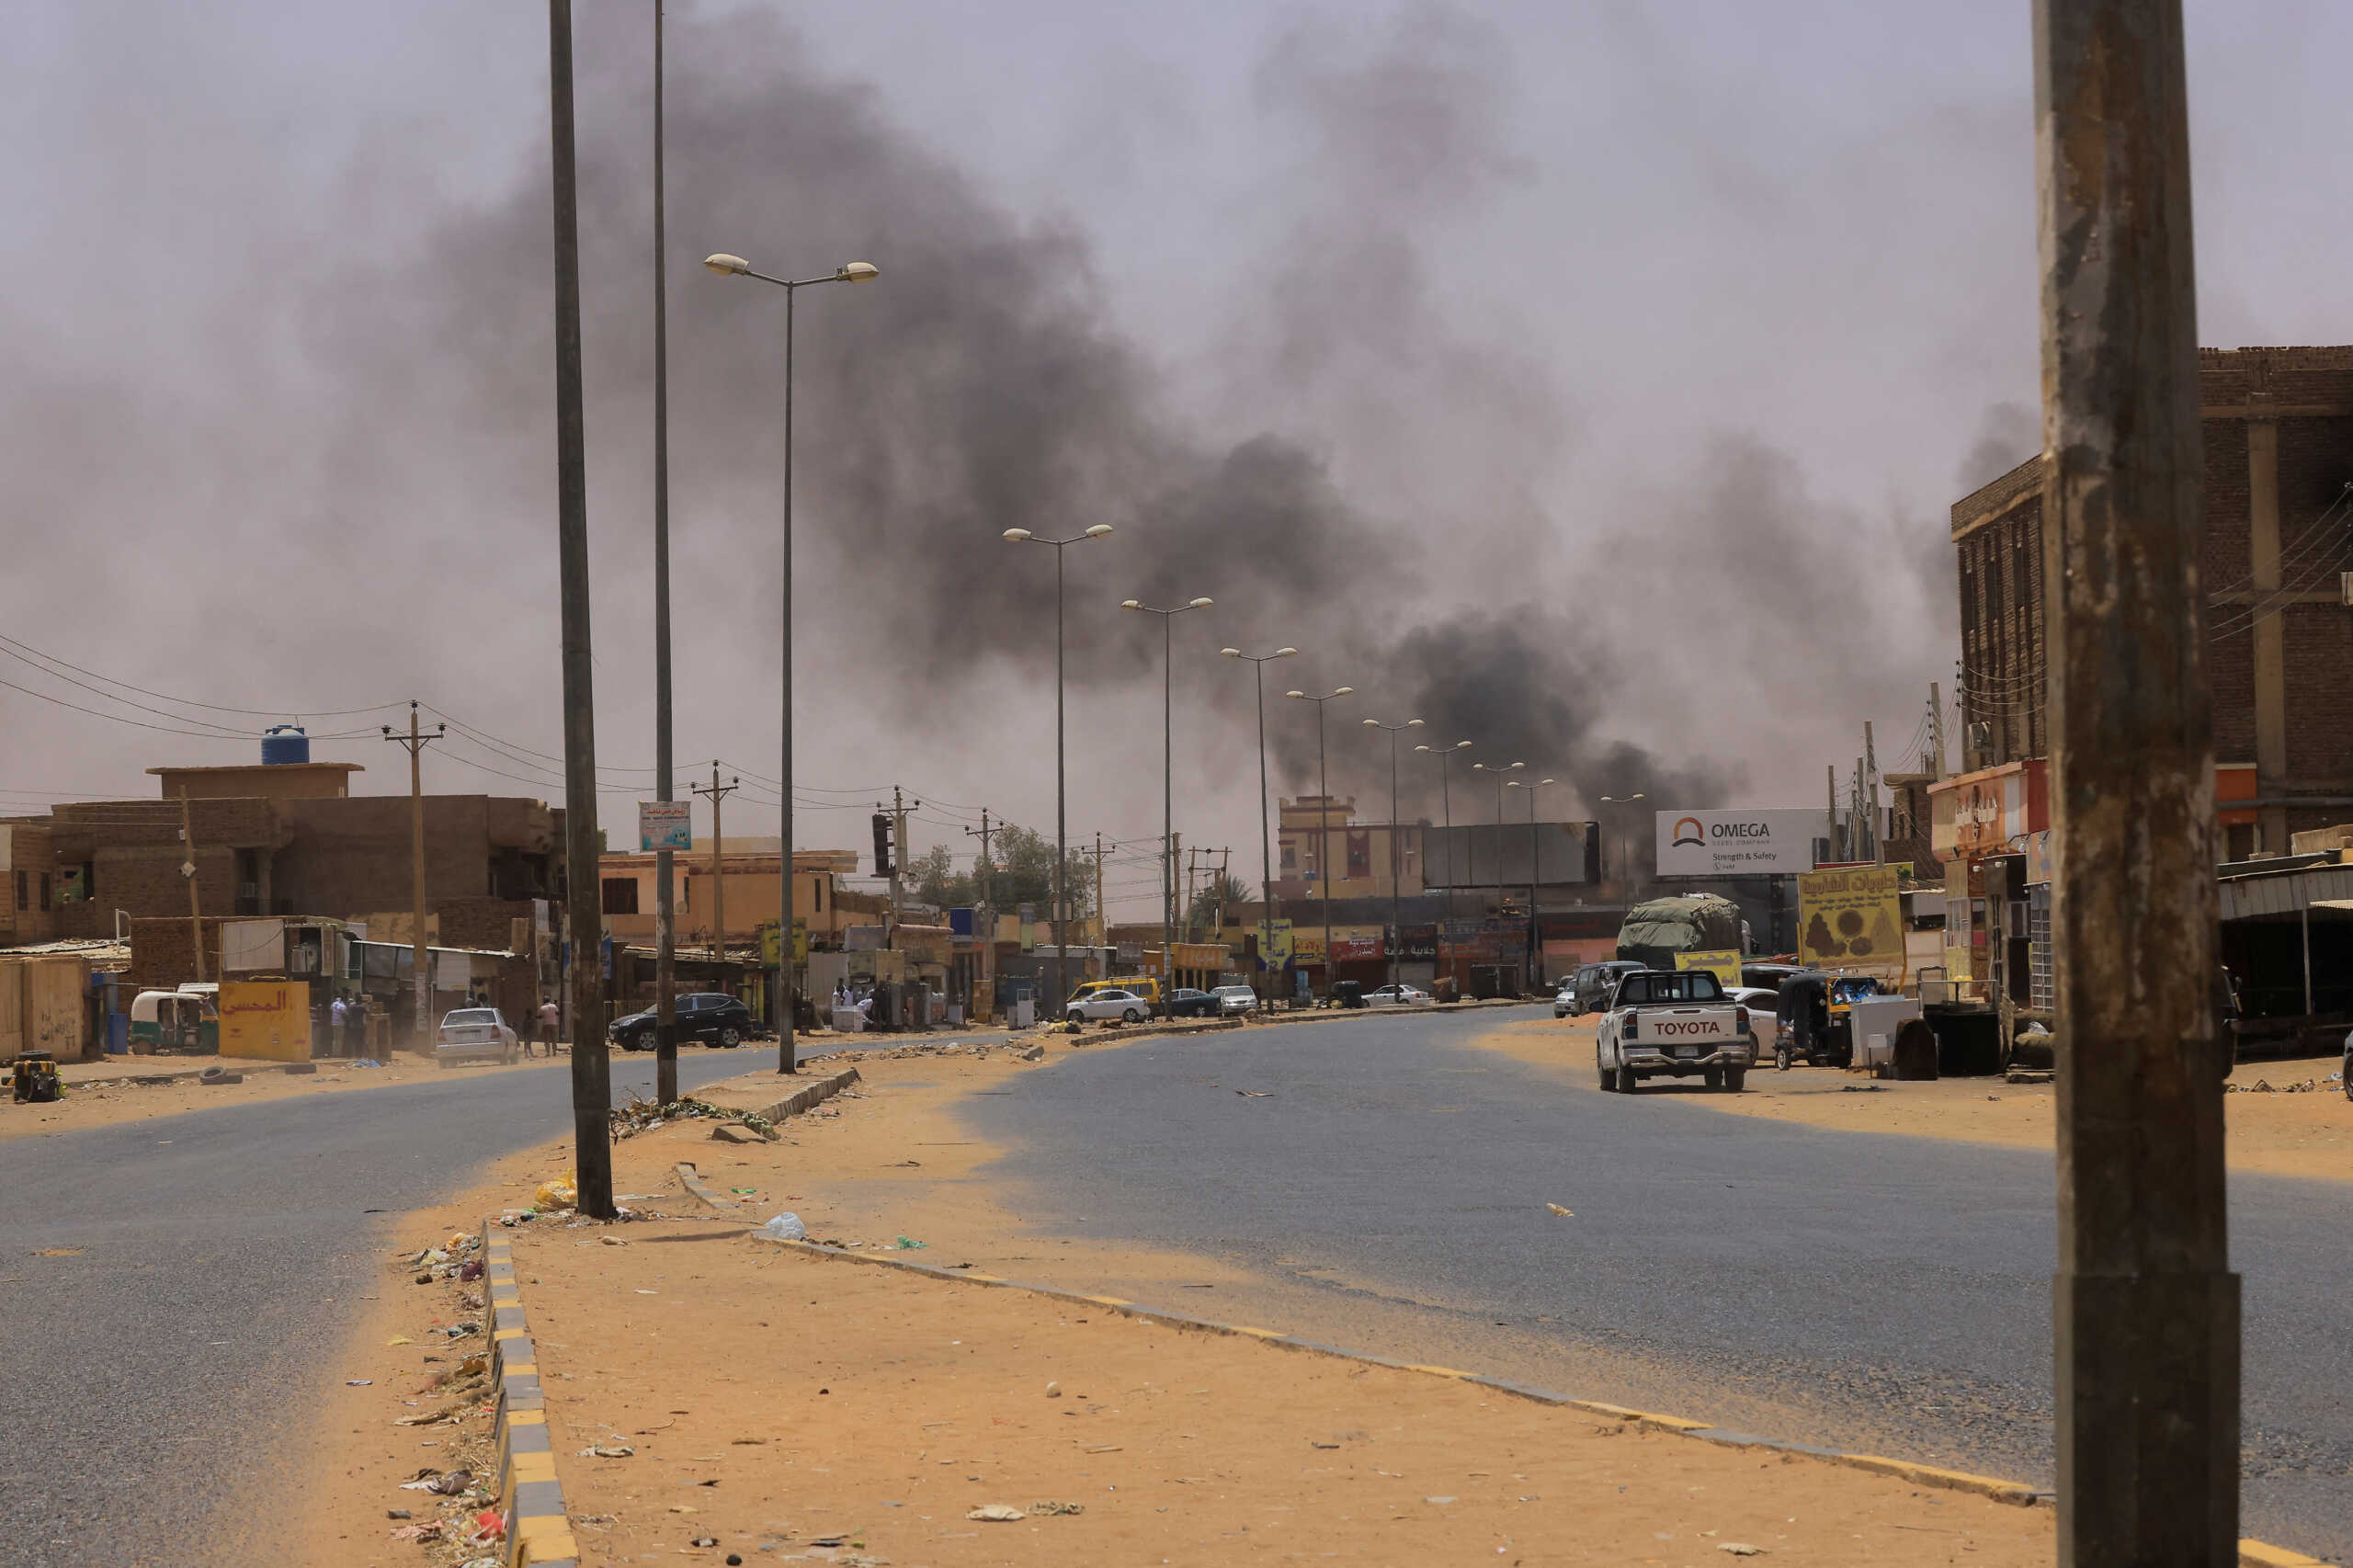 Σουδάν: «Είμαστε εγκλωβισμένοι 4 μέρες, ακούμε συνεχώς πυροβολισμούς και εκρήξεις» – Η συγκλονιστική μαρτυρία Έλληνα ξενοδόχου